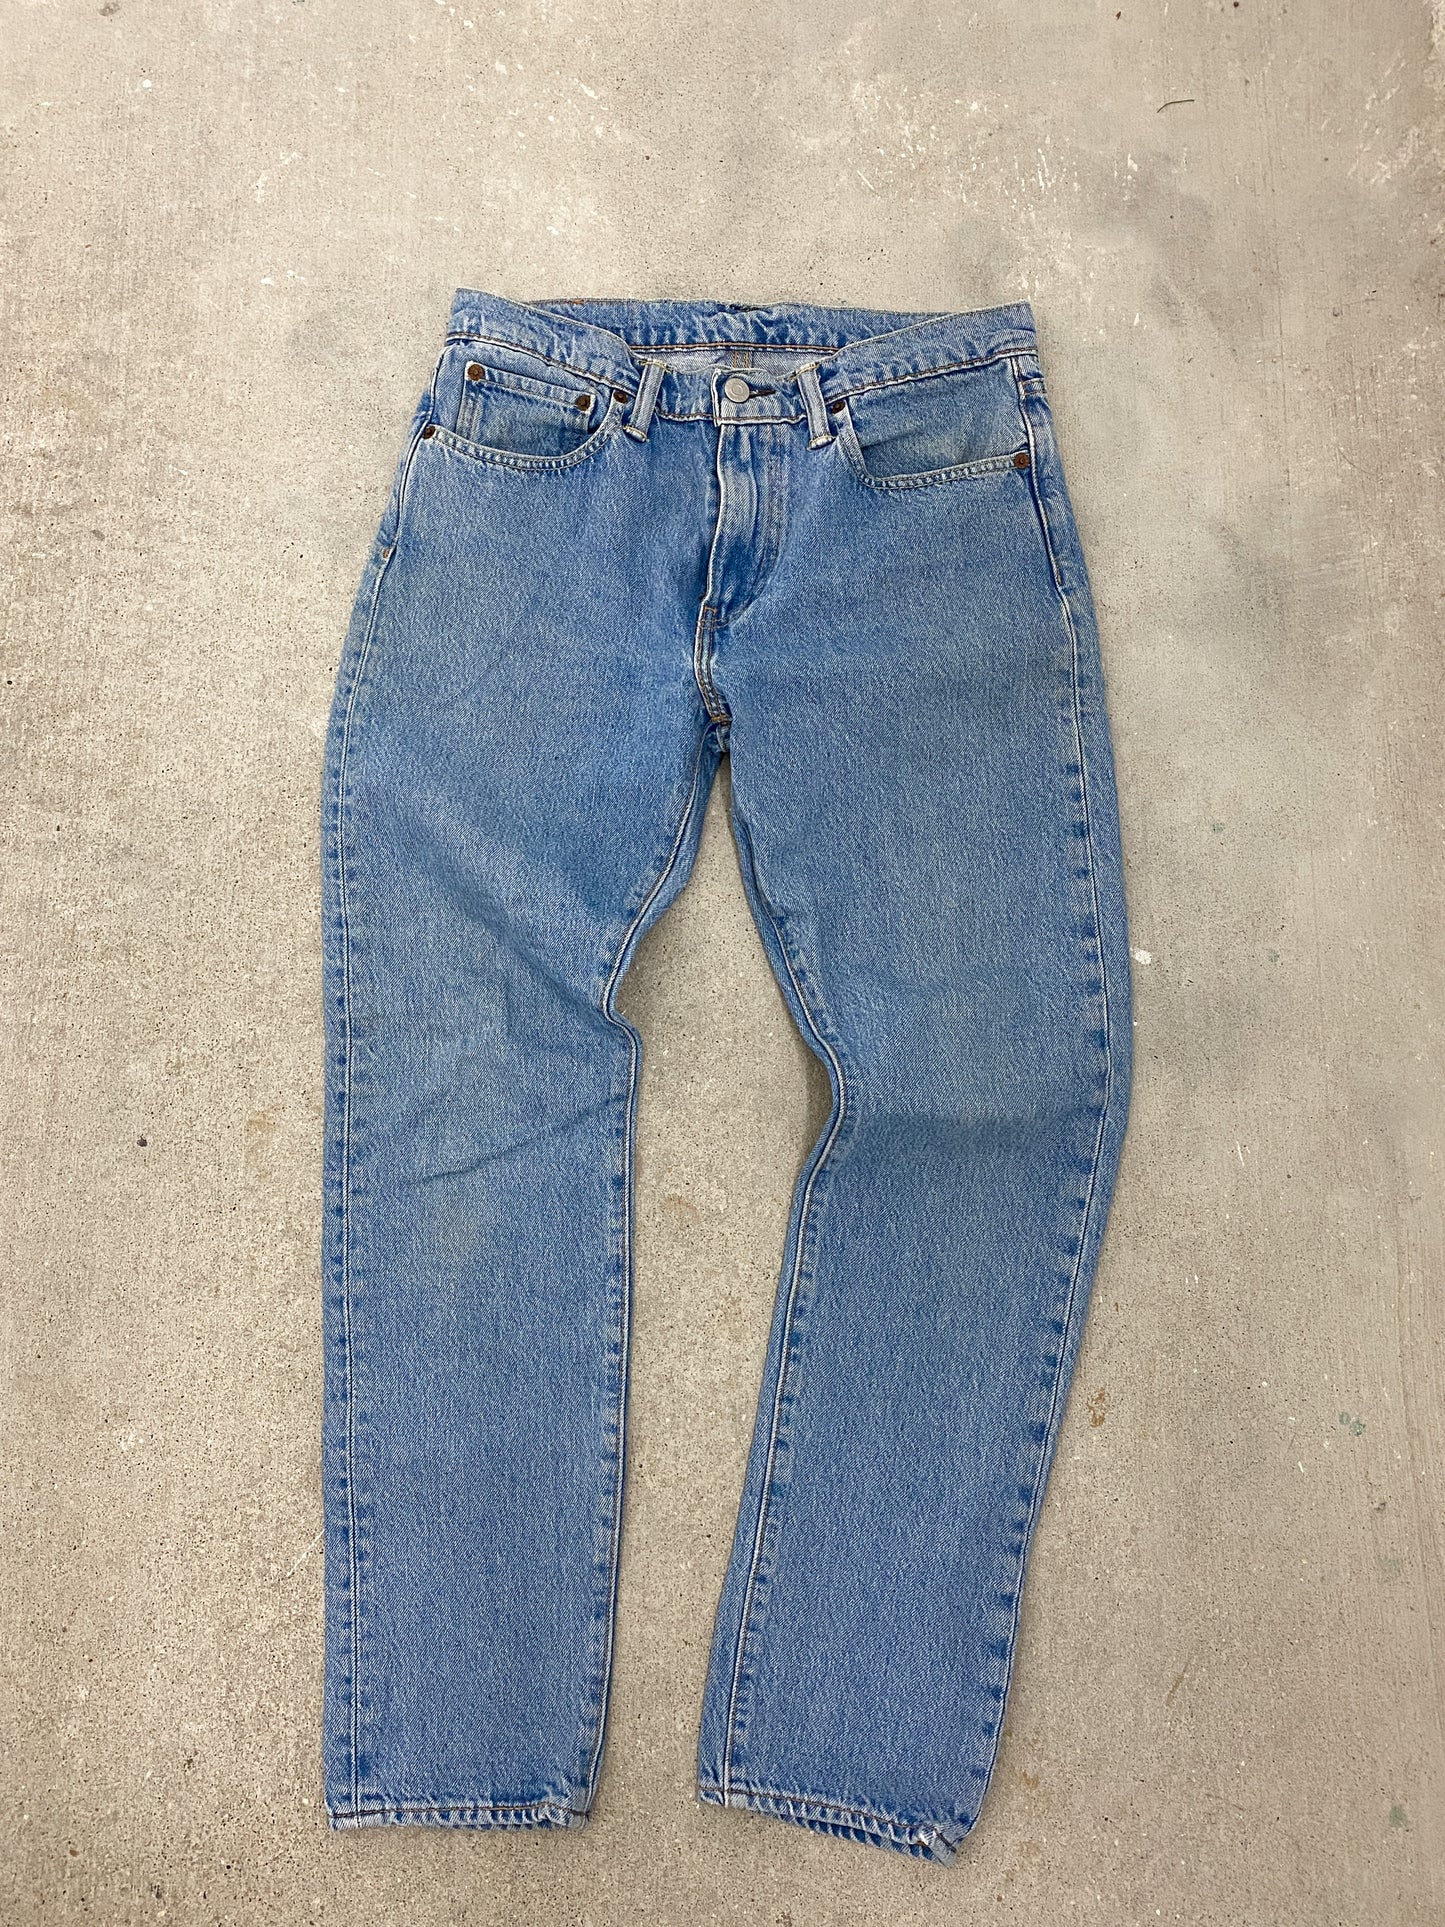 Light Wash Levi Jeans (31x30)